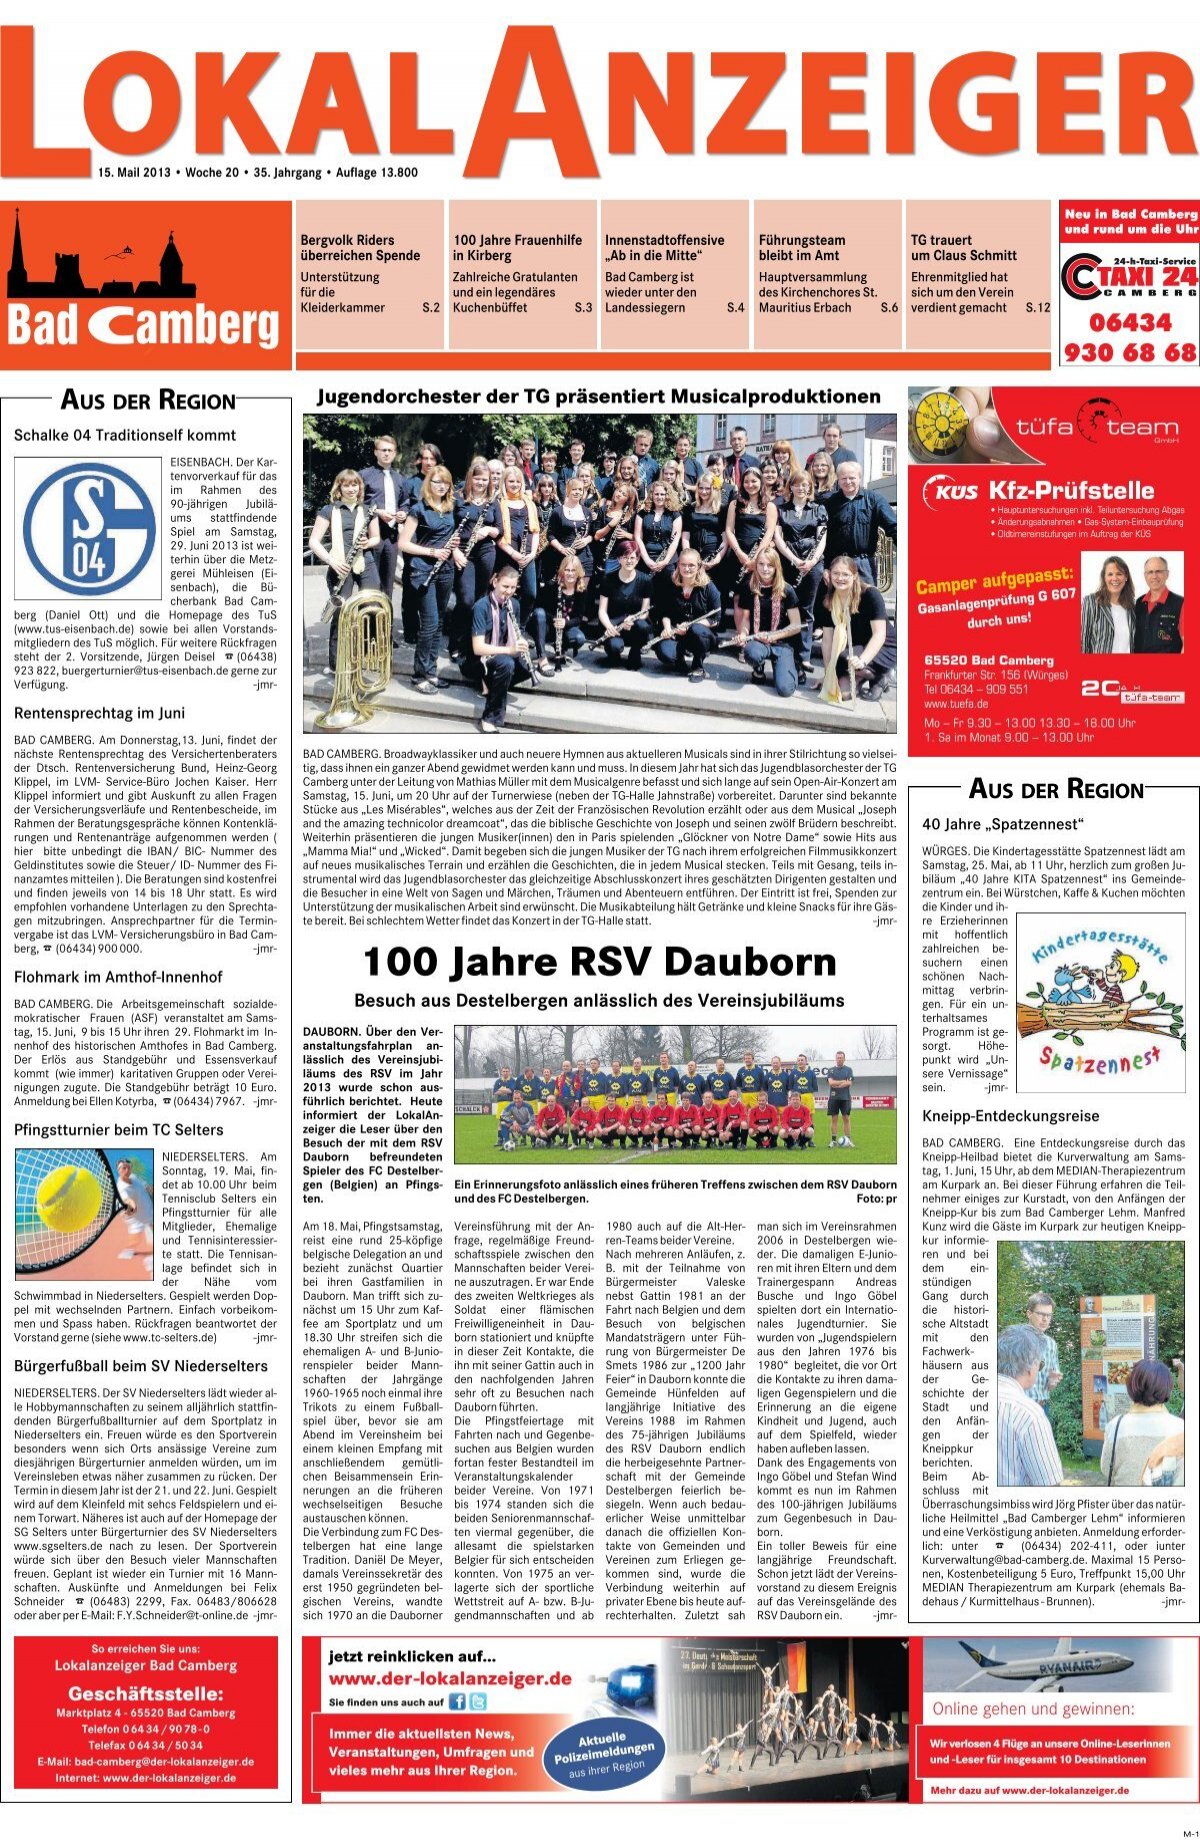 KW 20 | 15.05.2013 - Der Lokalanzeiger